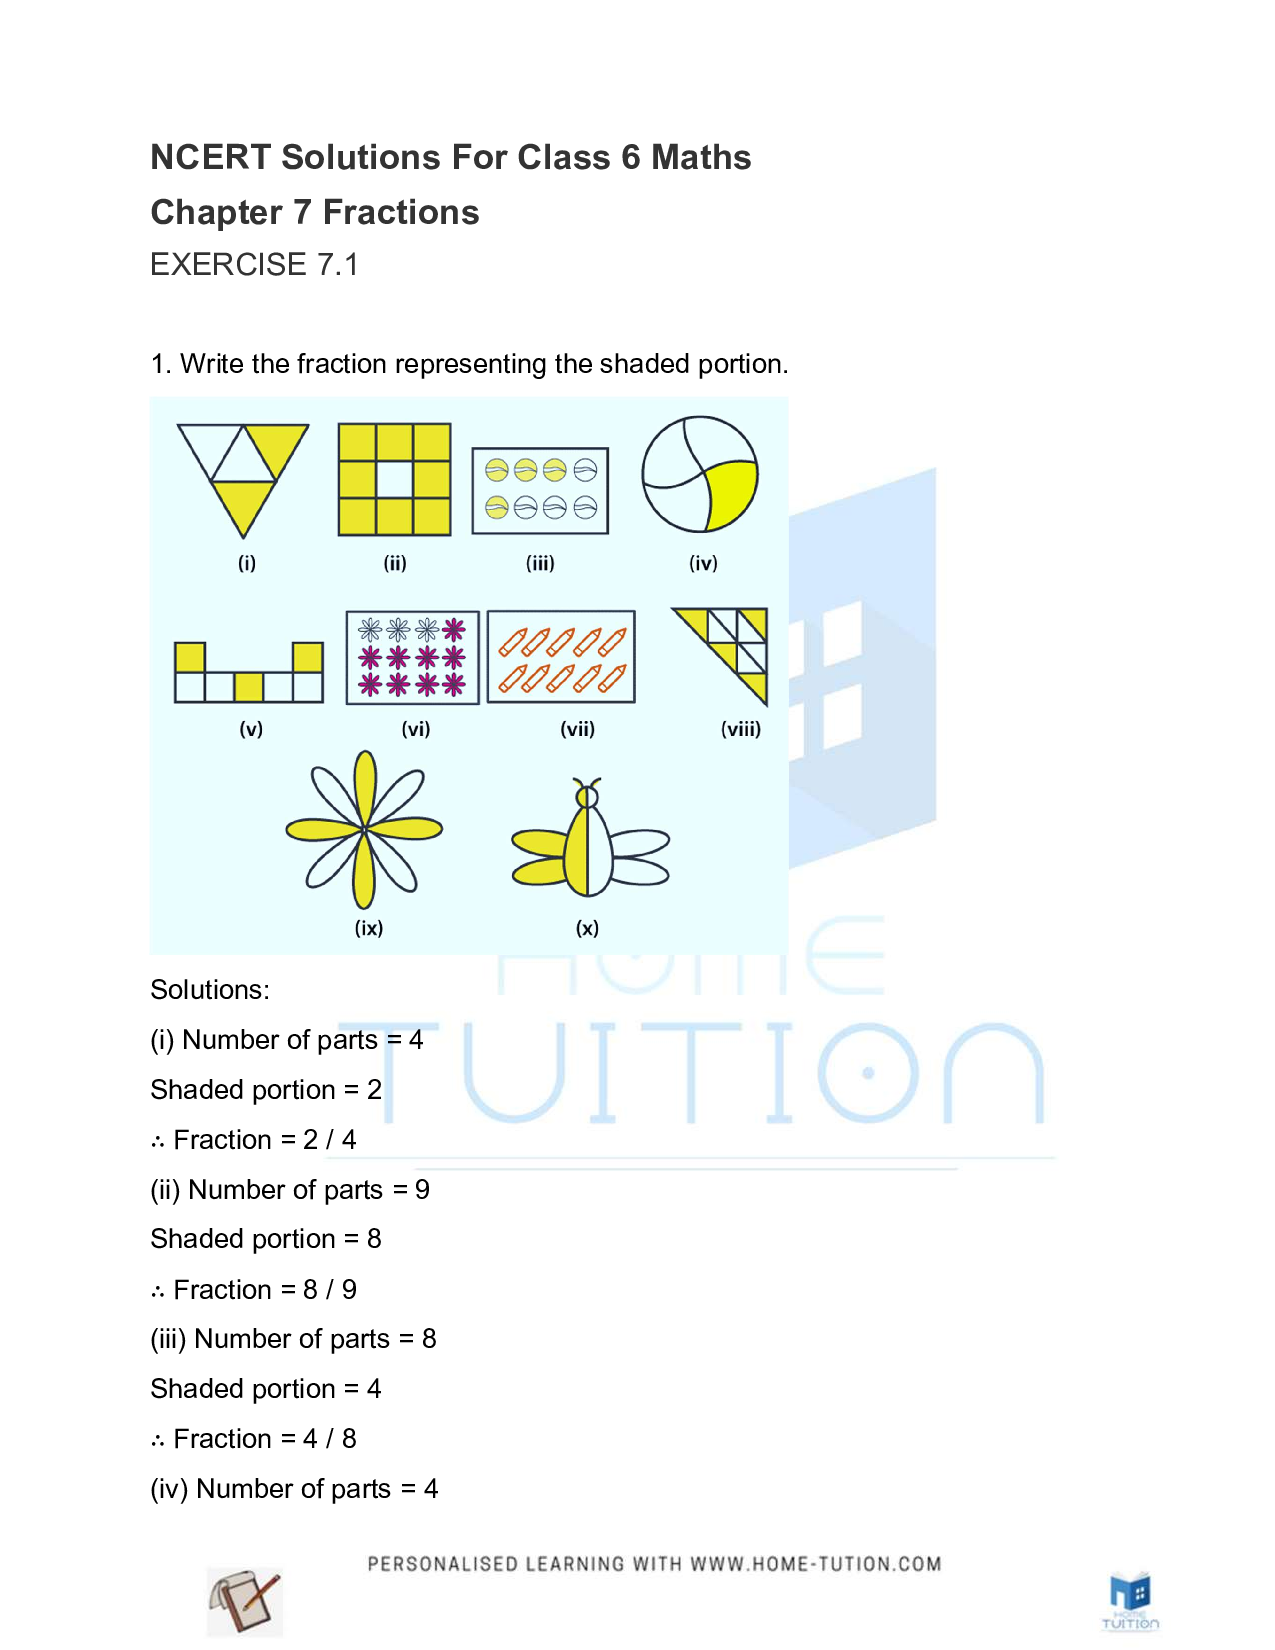 Class 6 Maths Chapter 7 Fractions